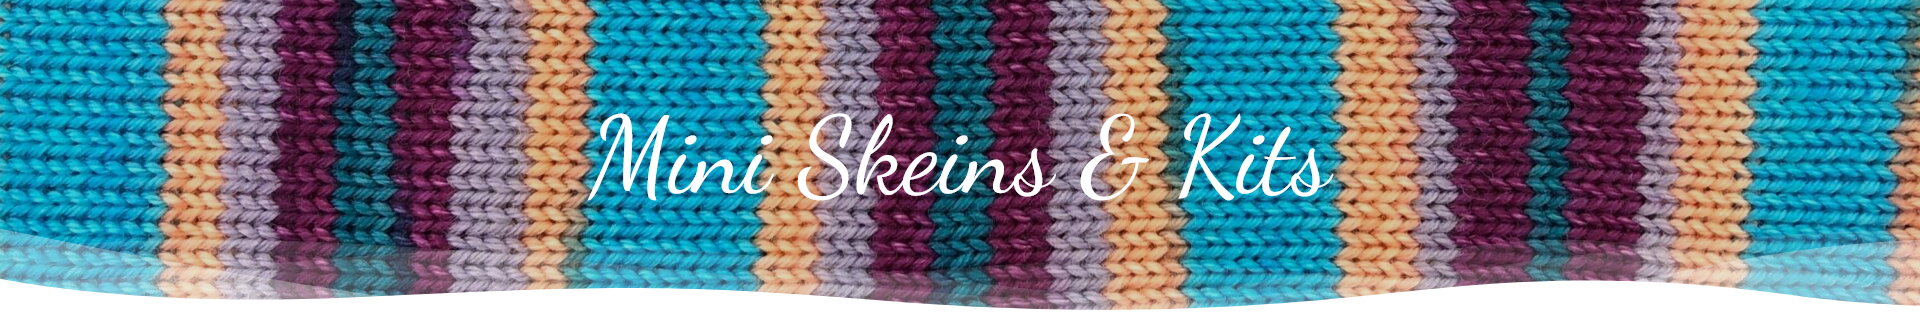 Mini Skeins & Kits banner